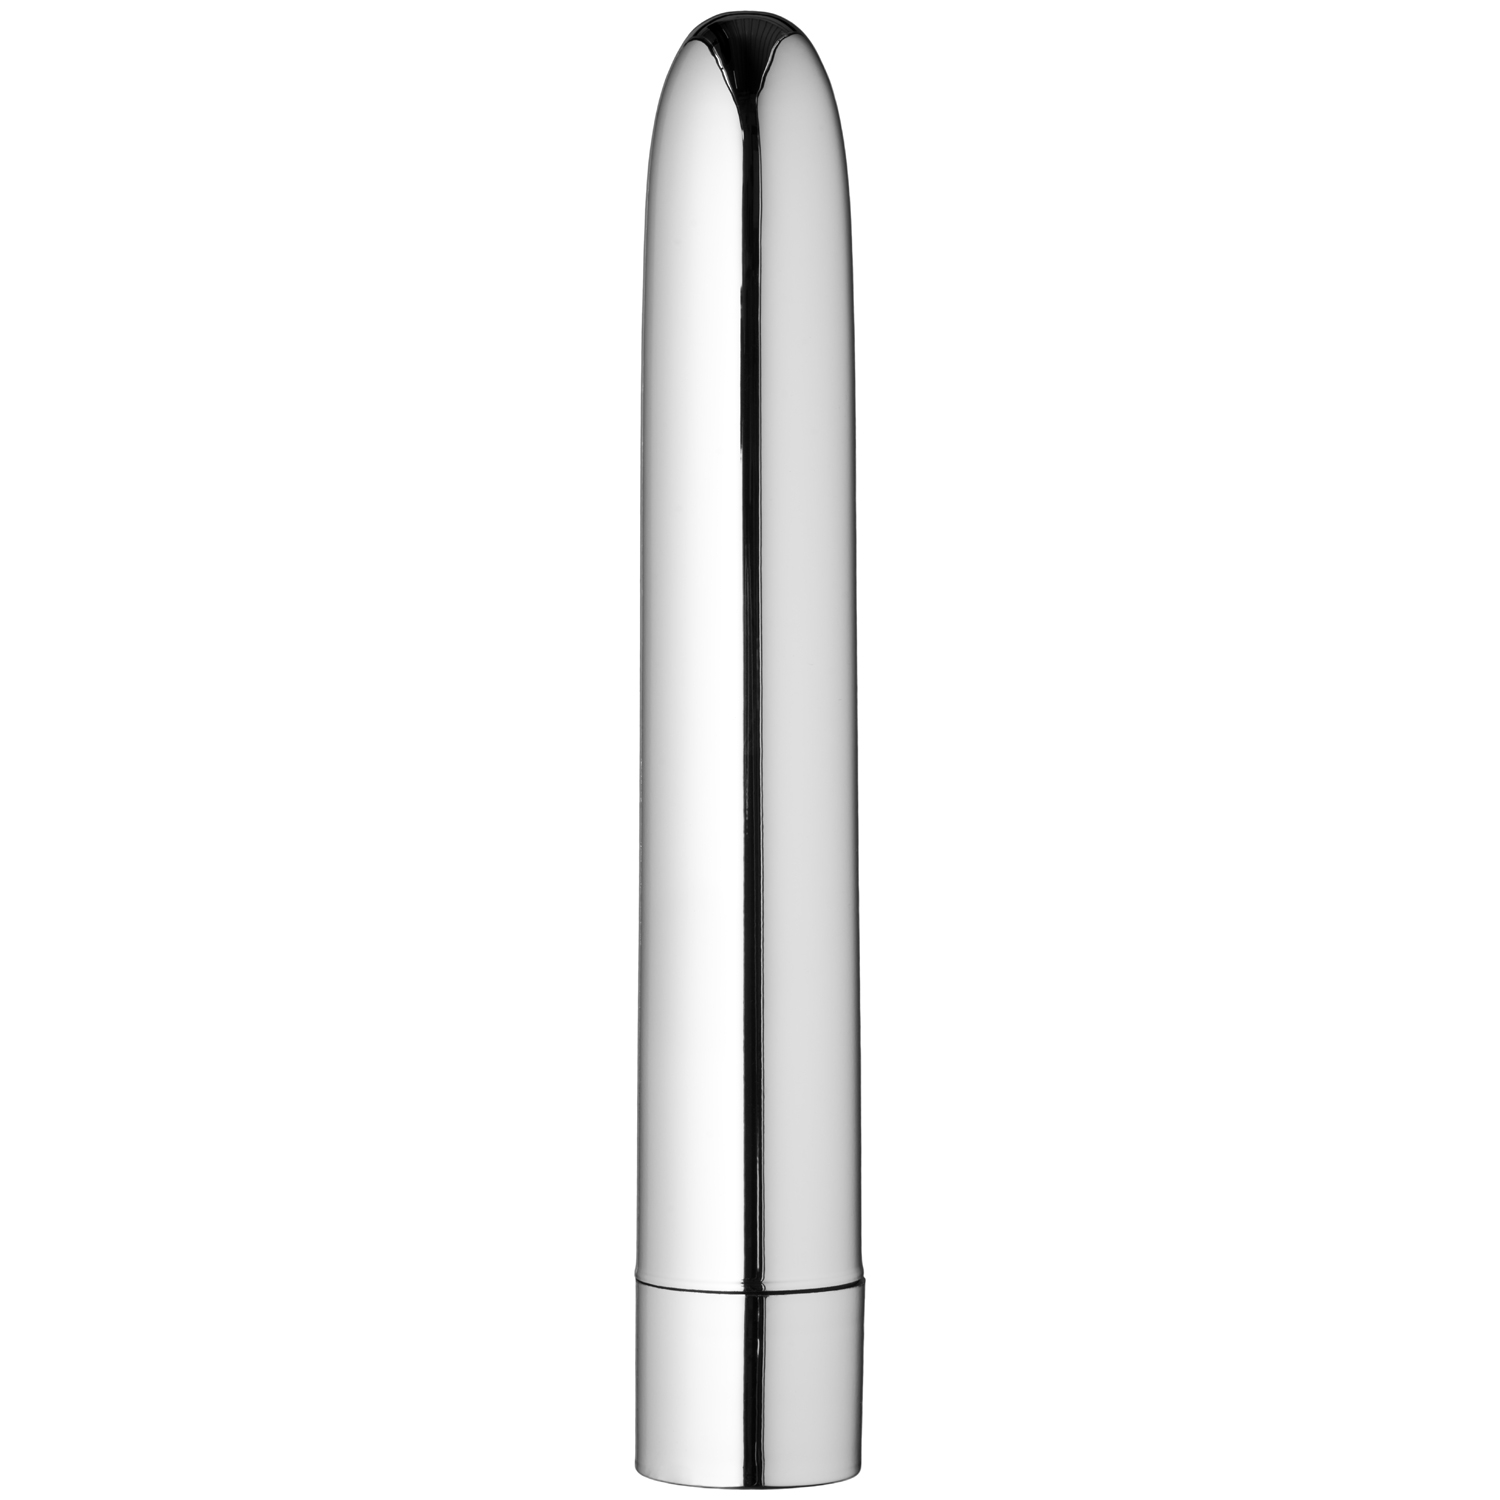 Sinful Silver Classic 10 Speed Dildovibrator - Silver | Vibratorer//Favoriter//REA för kvinnor//REA för kvinnor//Kvinnor//Vibrerande Dildo//REA//Dildos//Dildovibrator//Sinful//Färgade Dildos//Lagerrea//3 för 249:- | Intimast